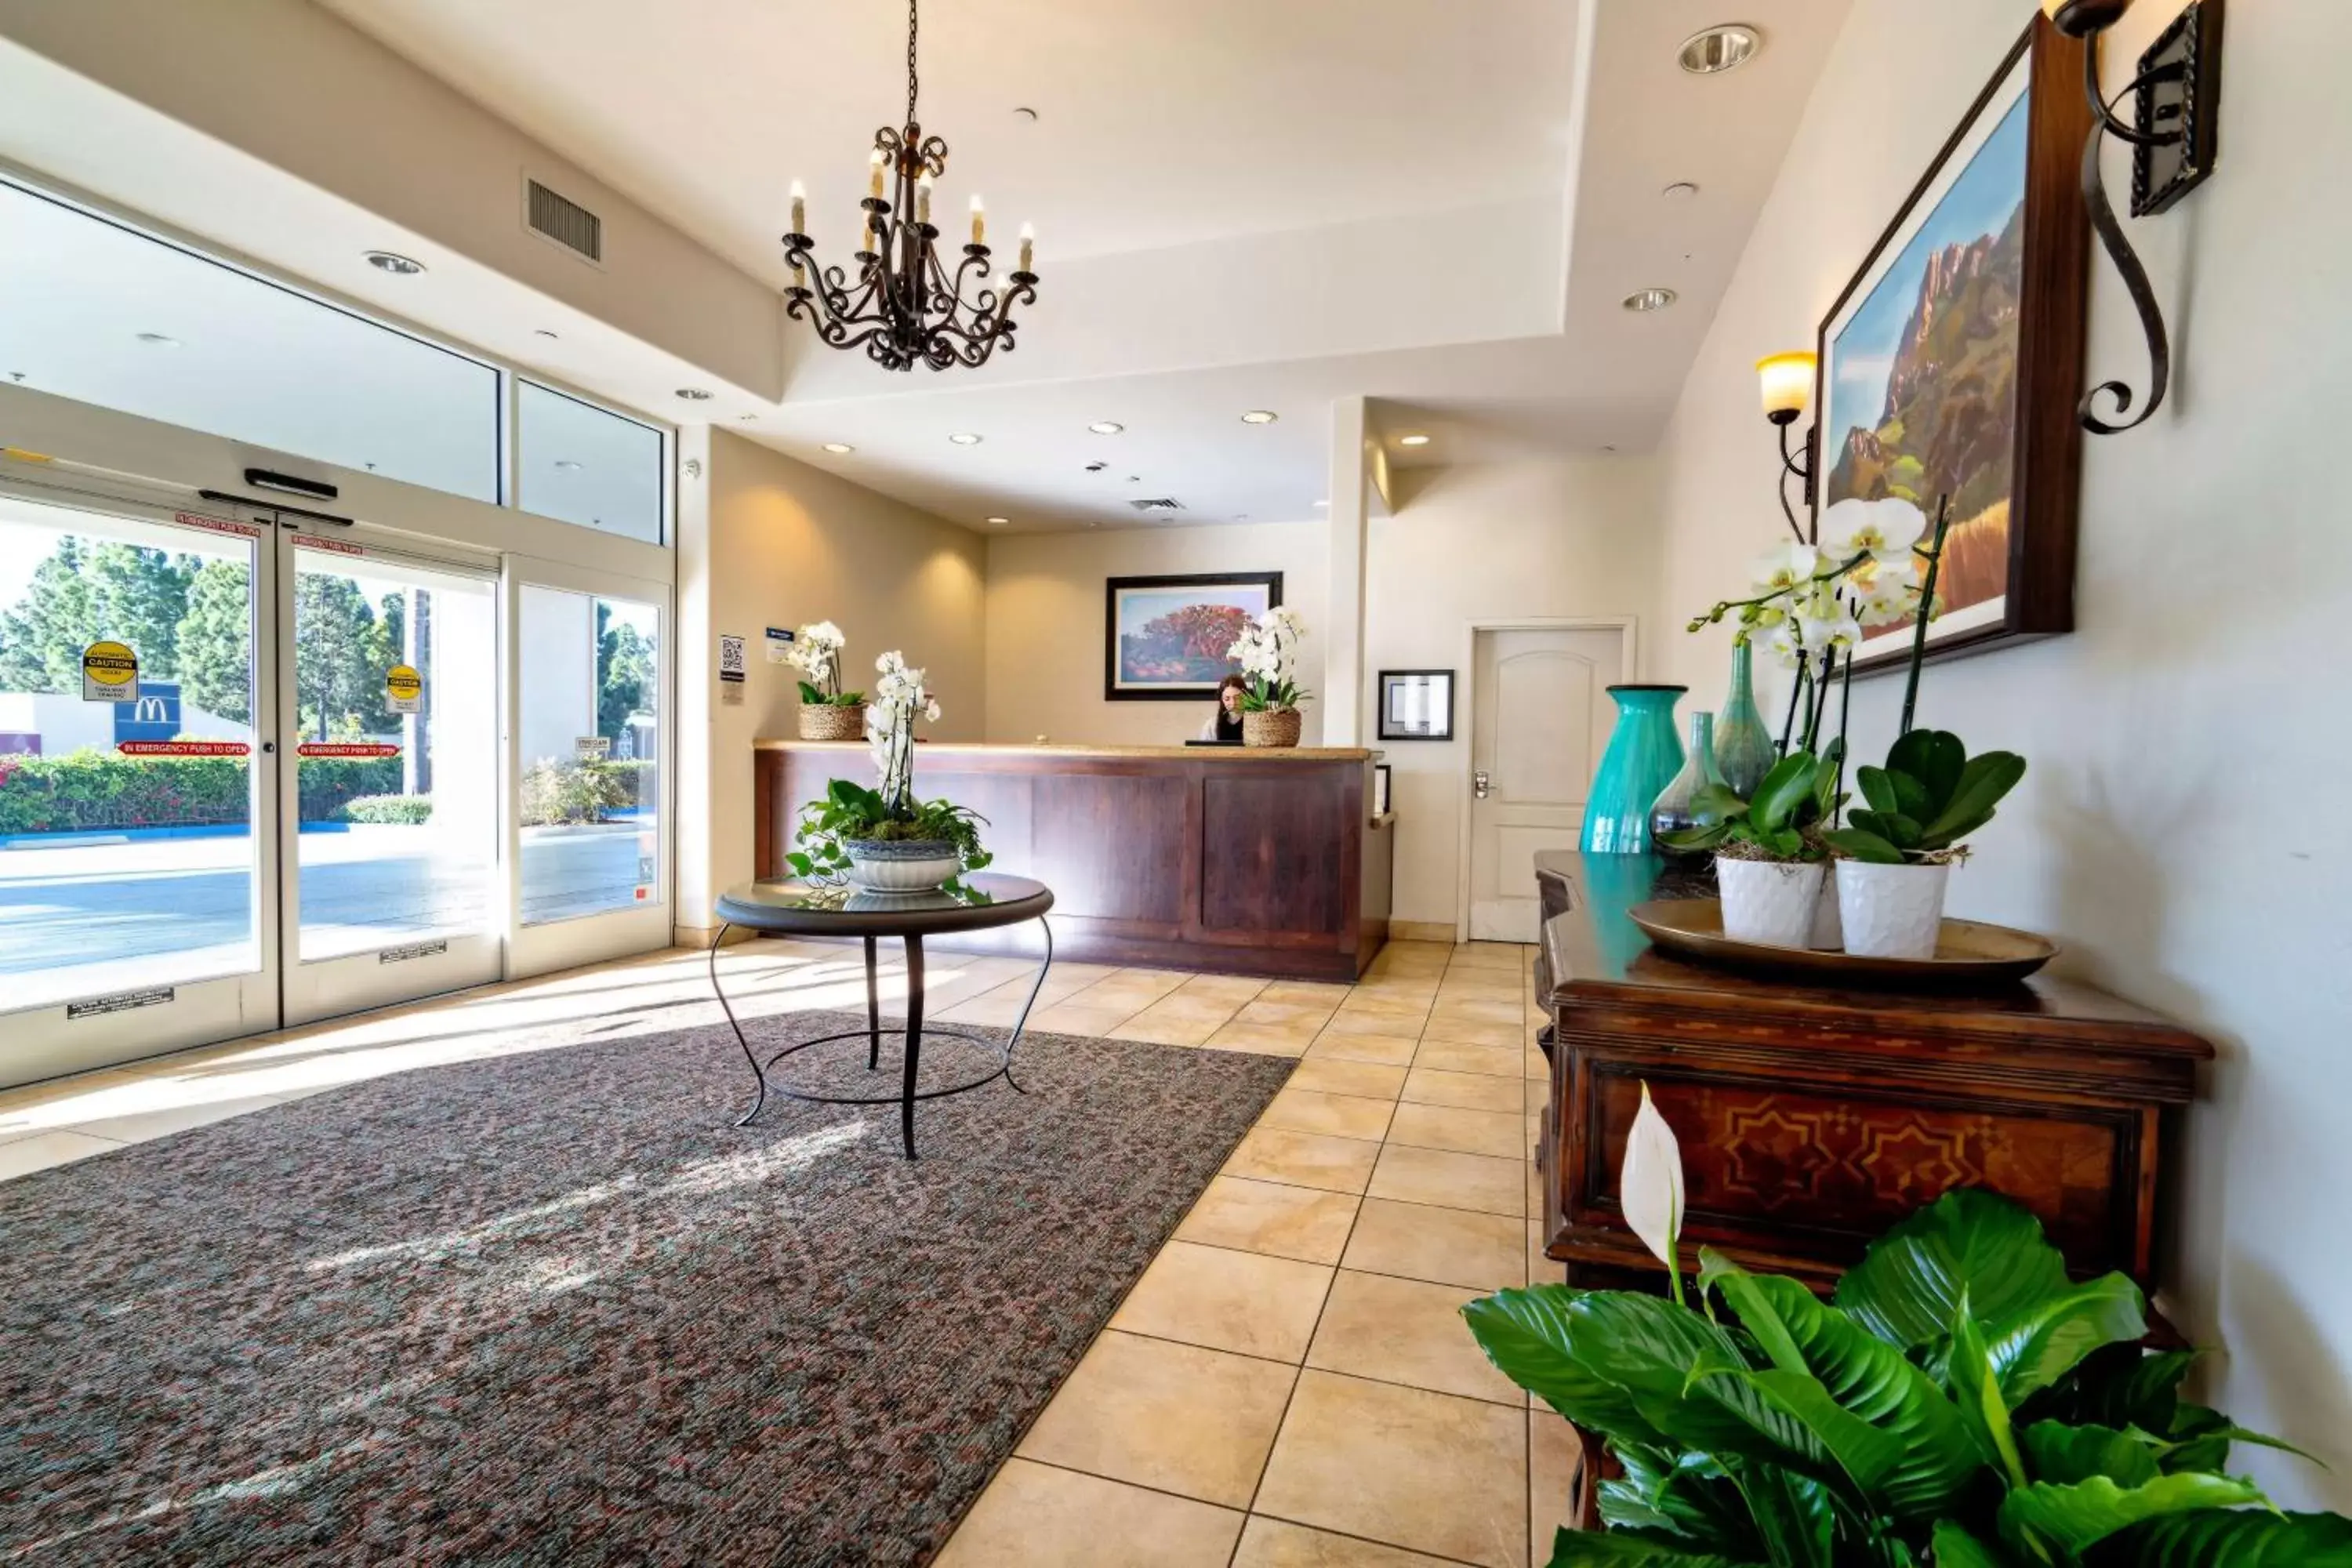 Lobby or reception, Lobby/Reception in Best Western Plus Royal Oak Hotel